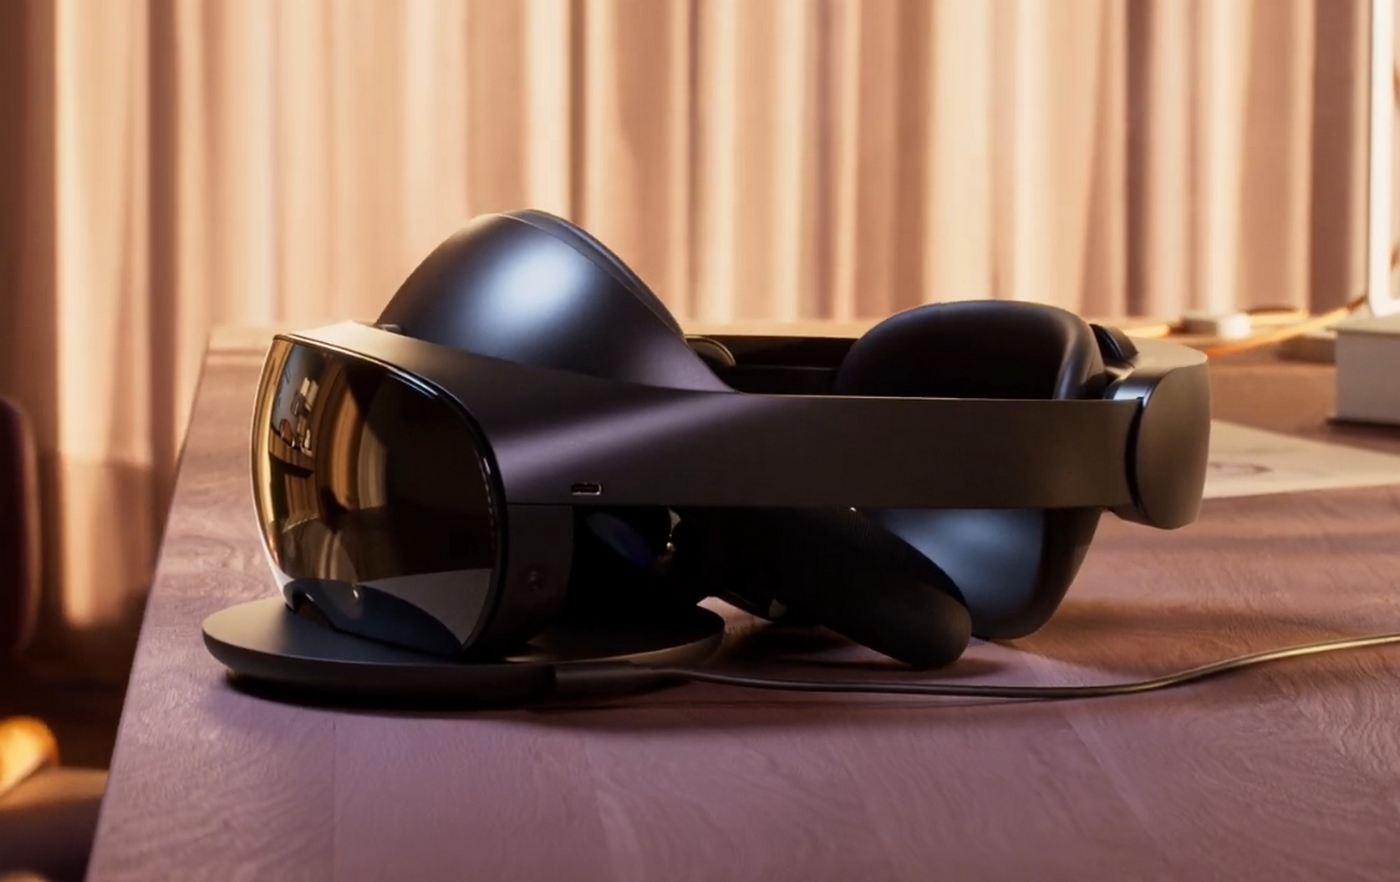 Oculus prepara unas nuevas gafas VR de gama media para PC